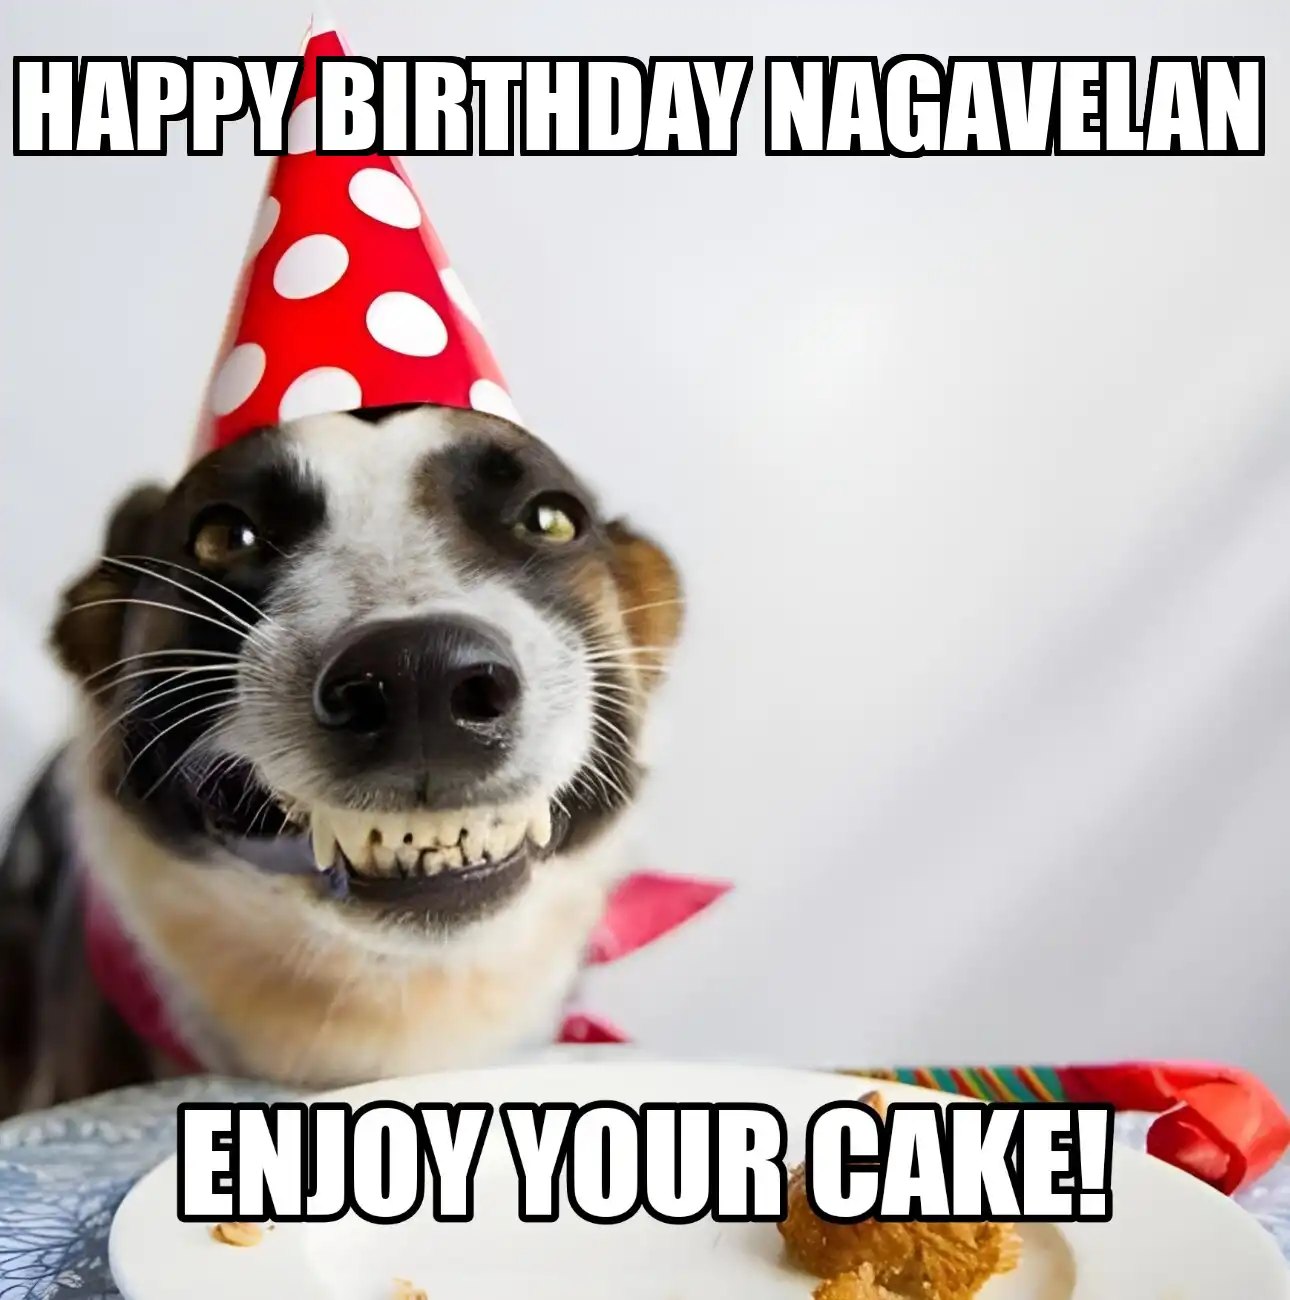 Happy Birthday Nagavelan Enjoy Your Cake Dog Meme